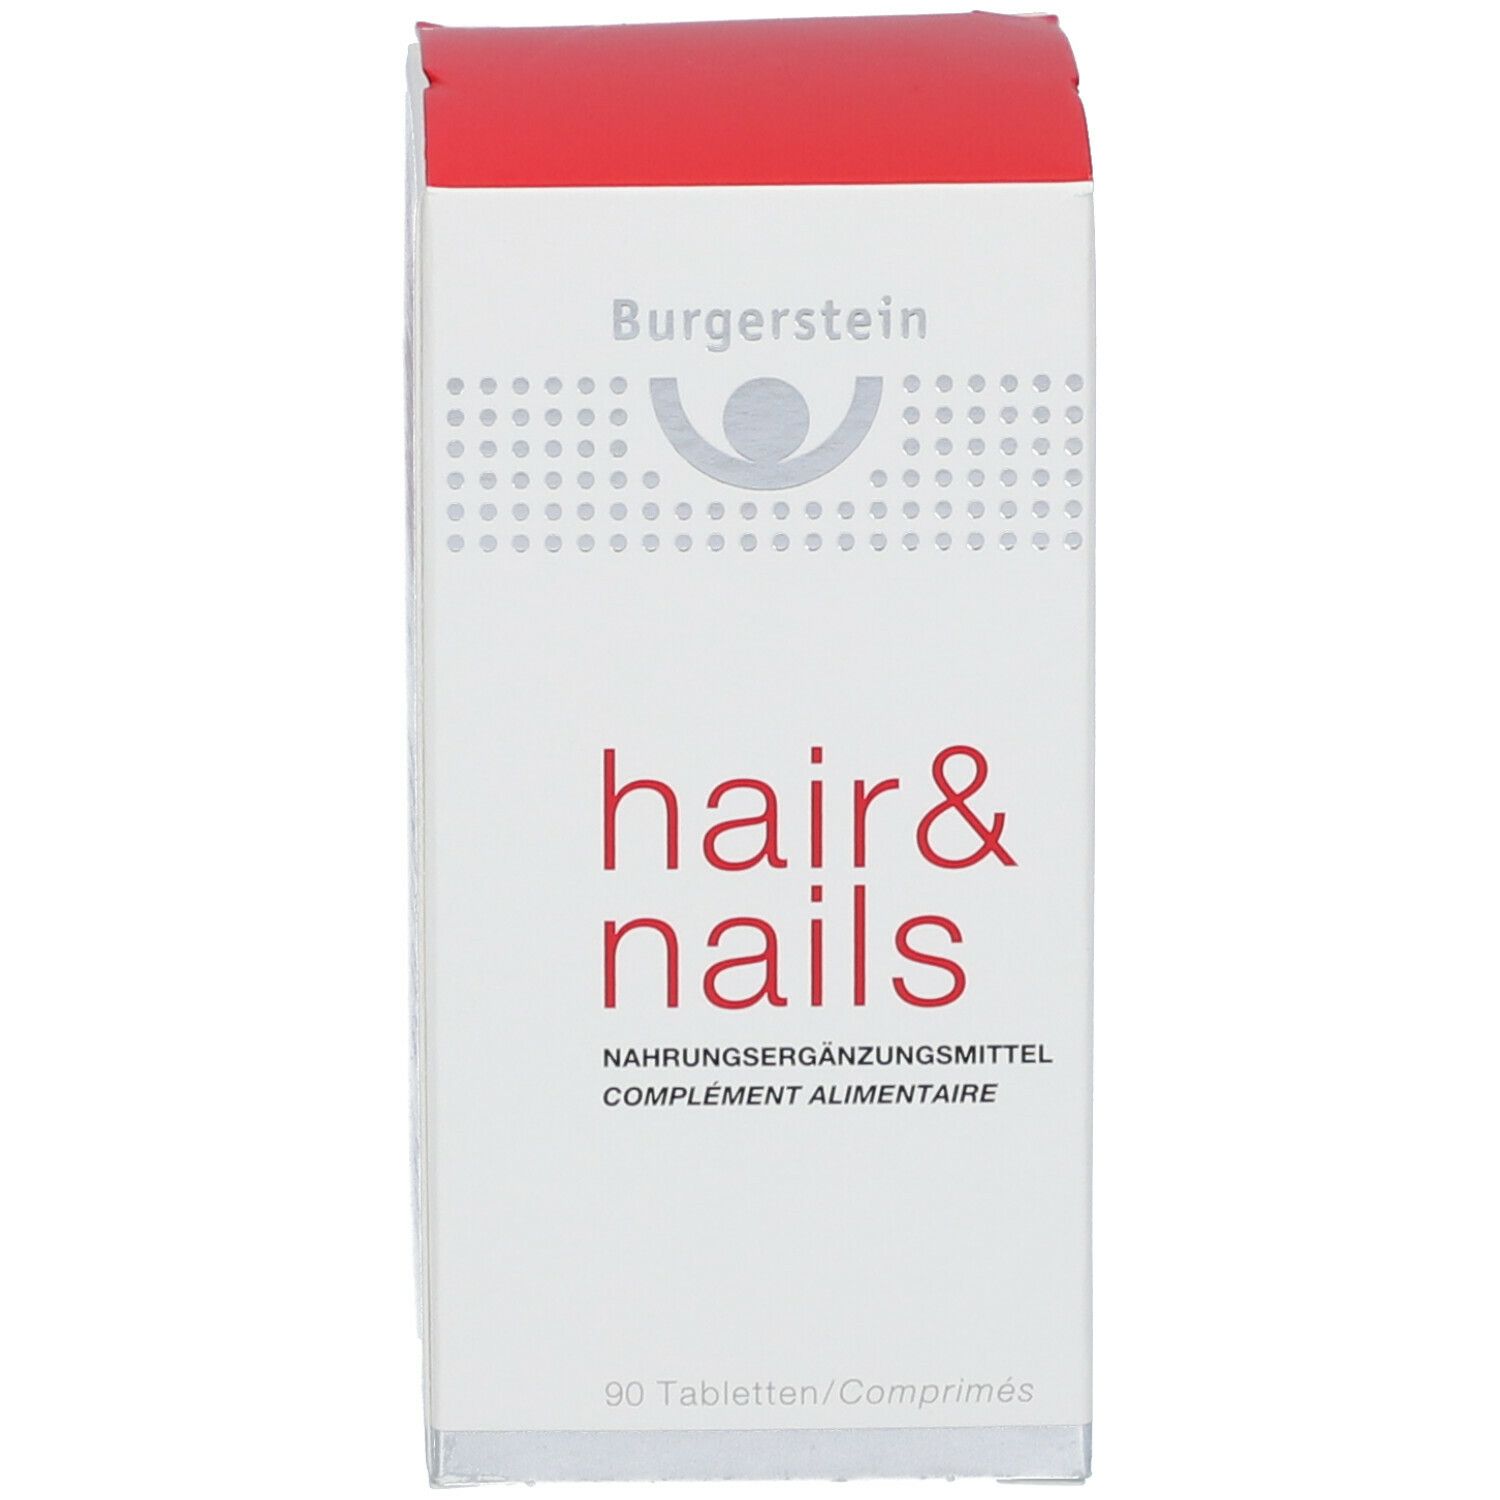 Burgerstein hair & nails